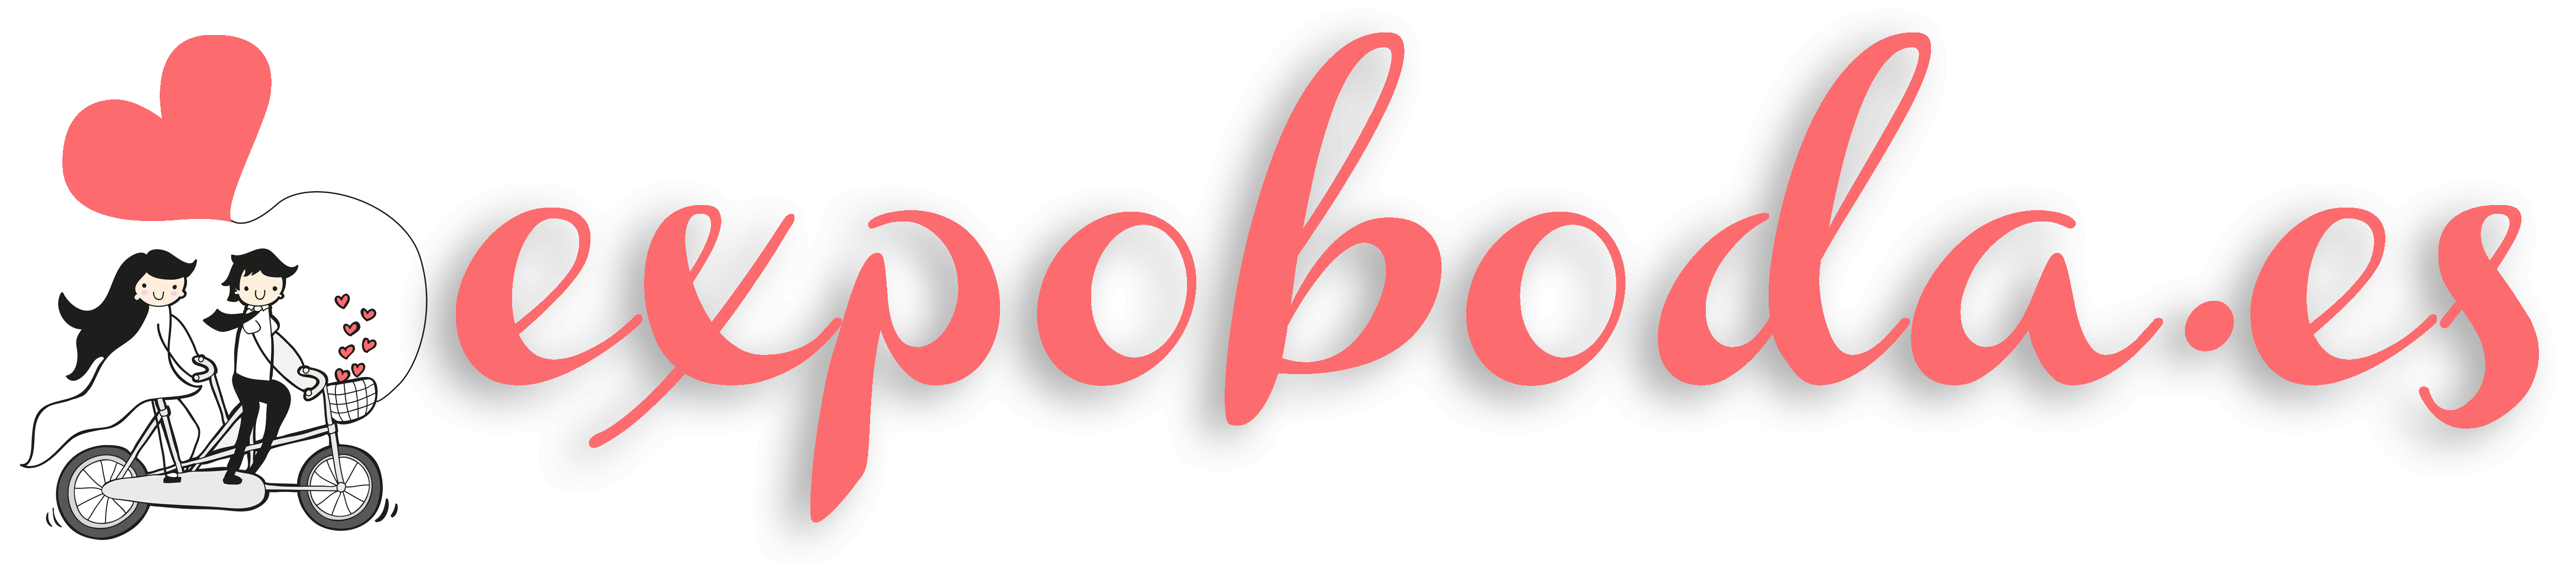 expoboda-logo